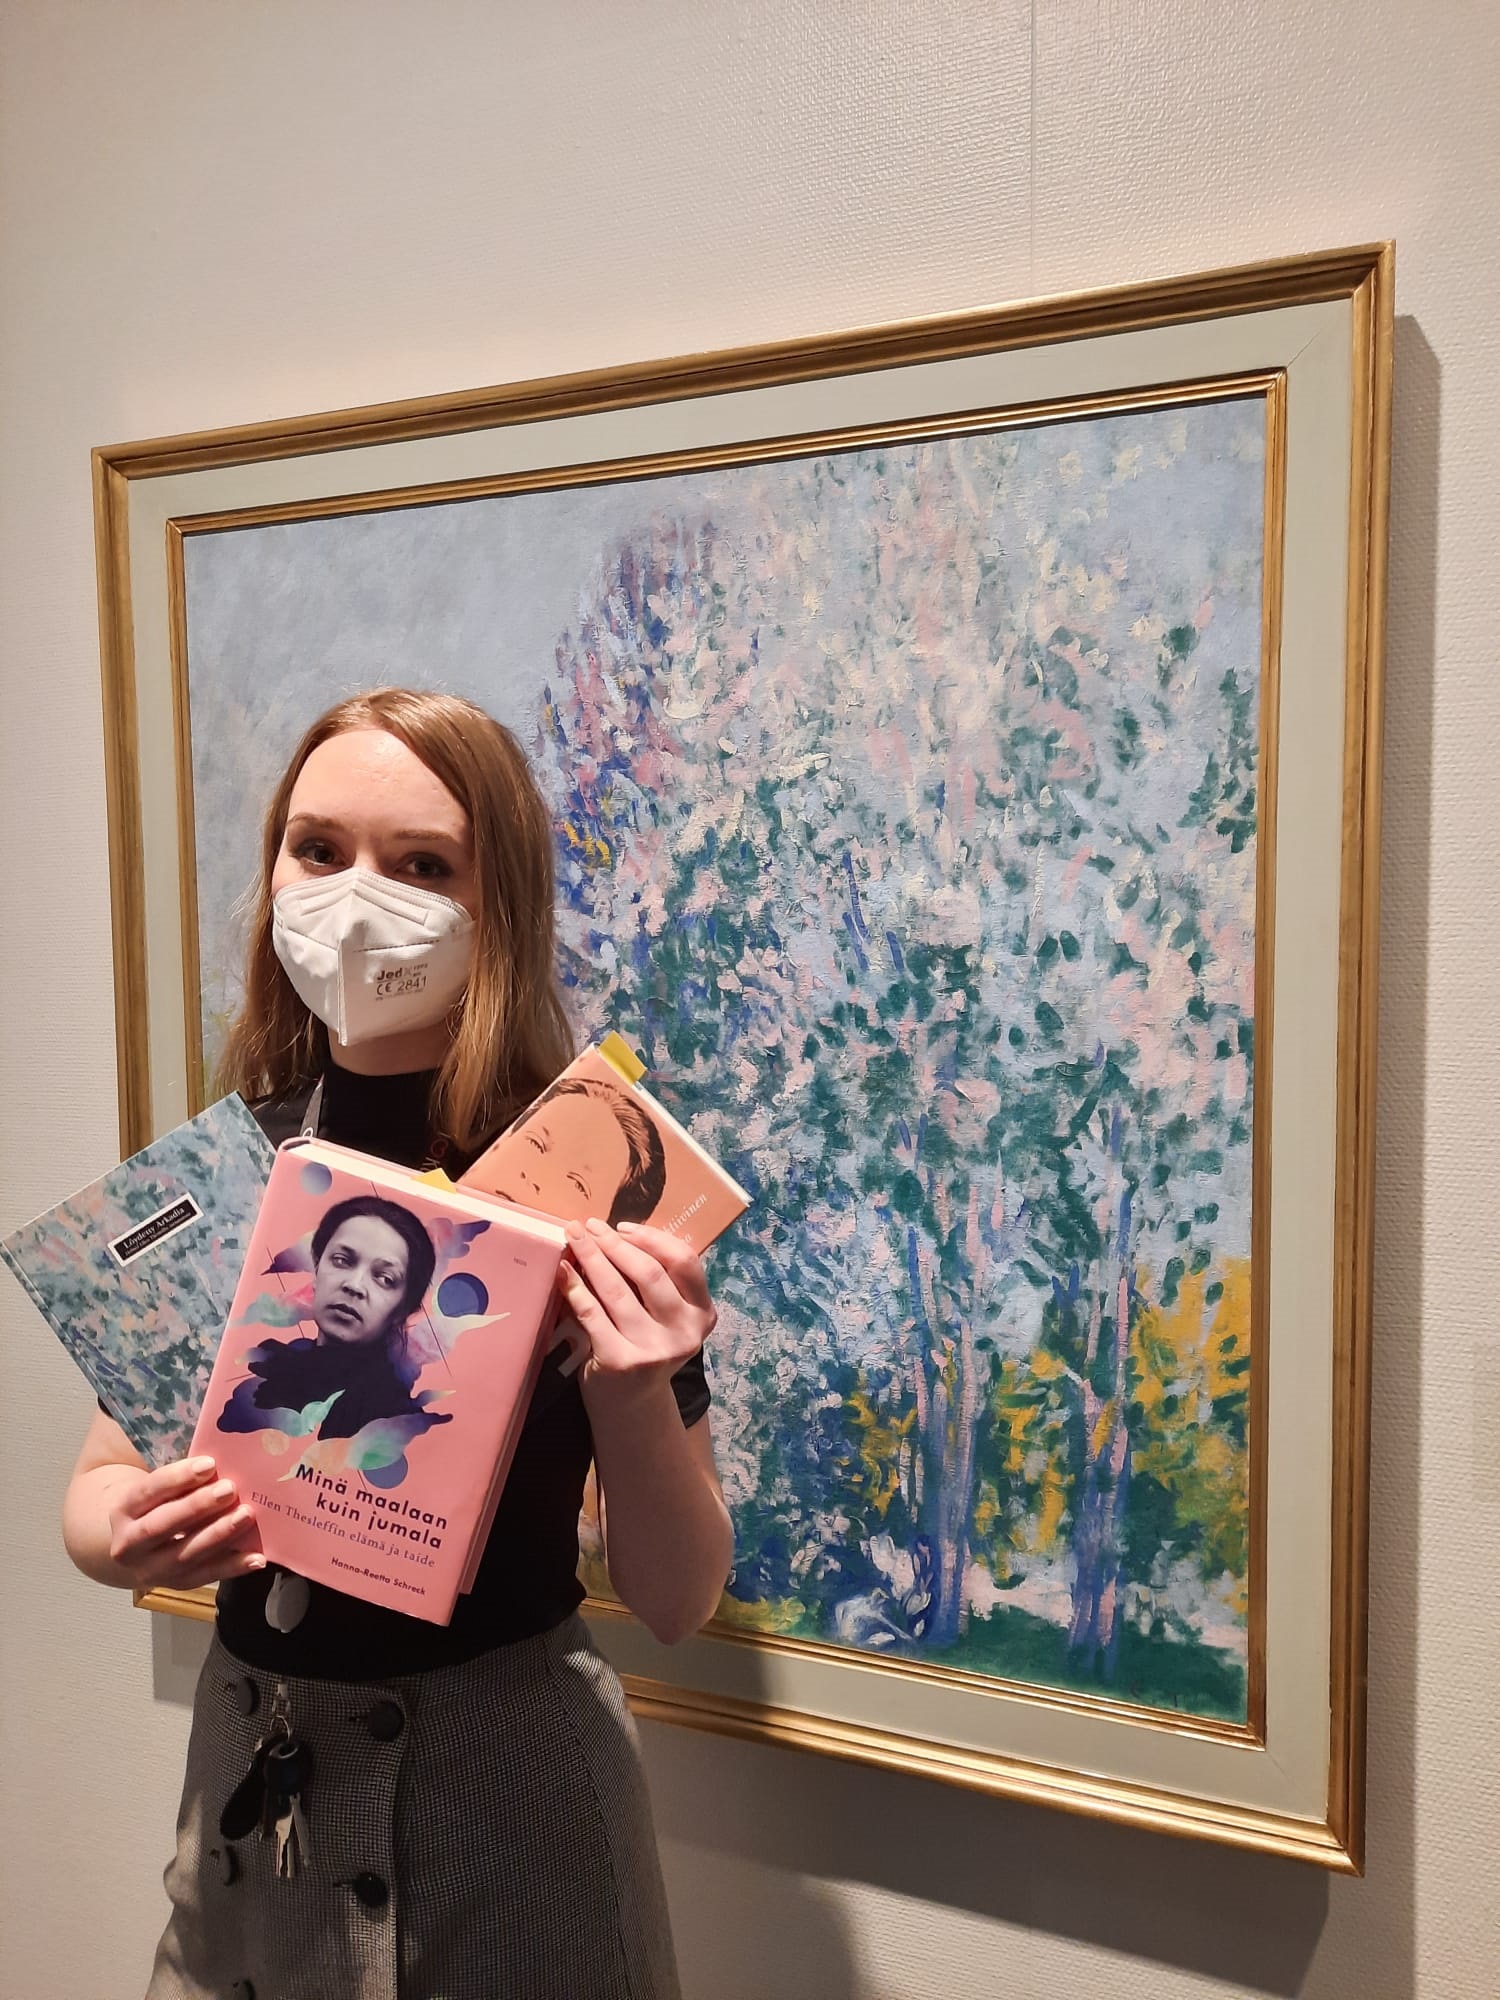 nainen pitelee kädessään kirjoja taustanaan Ellen Thesleffin maalaus Ihmisiä luonnossa.